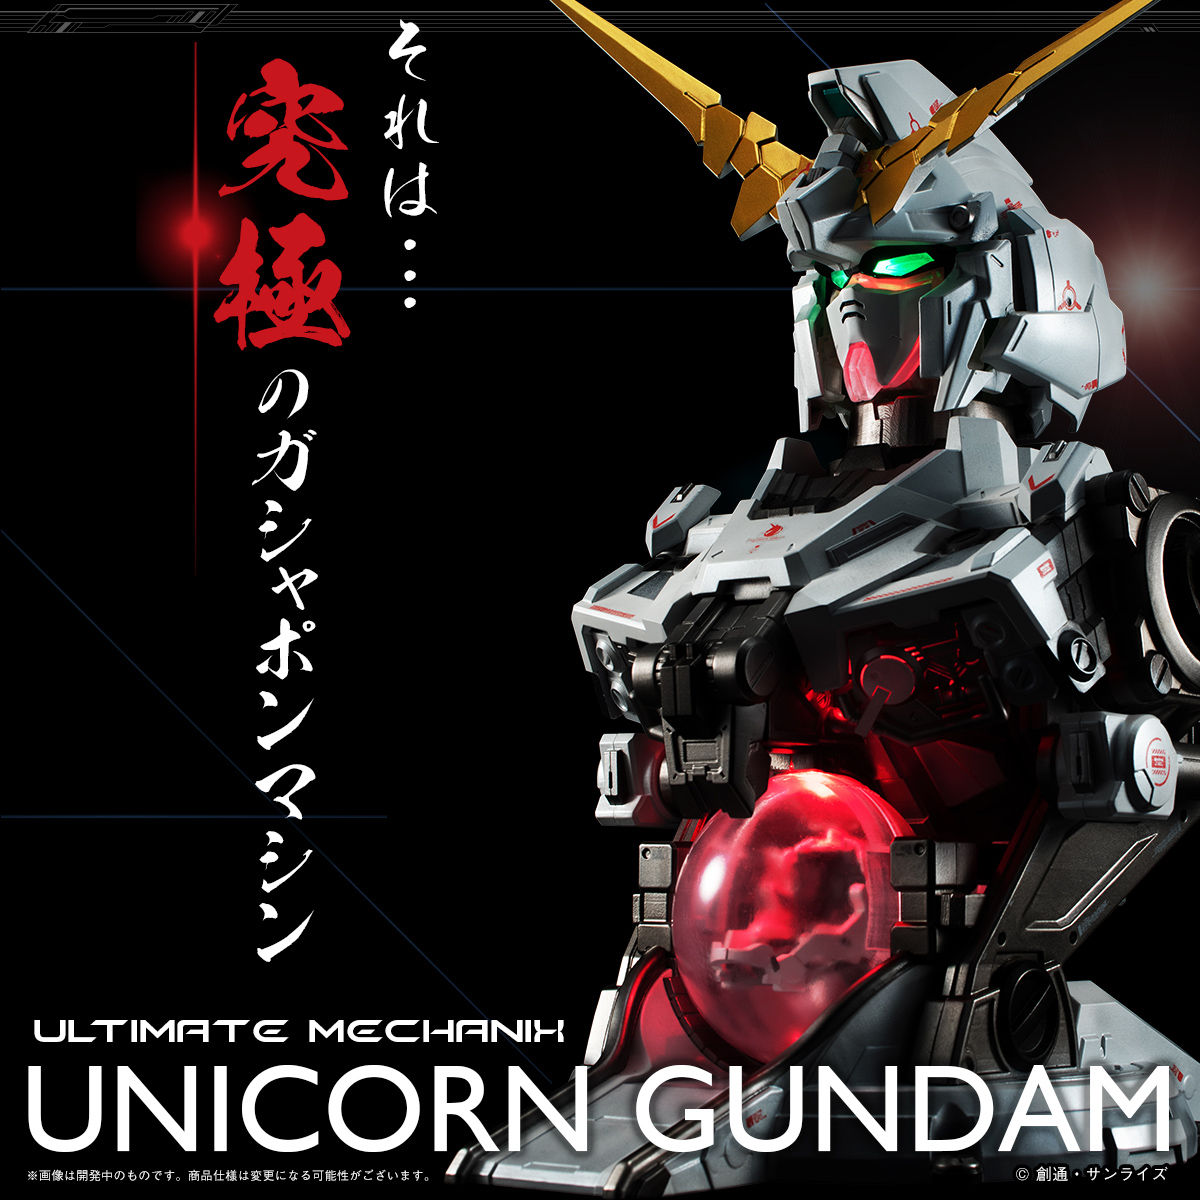 ガンダムuc ガシャポンマシン Ultimate Mechanix Unicorn Gundam アルティメット メカニックス ユニコーンガンダム 可動フィギュア バンダイ より21年12月発売予定 人気フィギュア安値で予約 トイゲット Blog